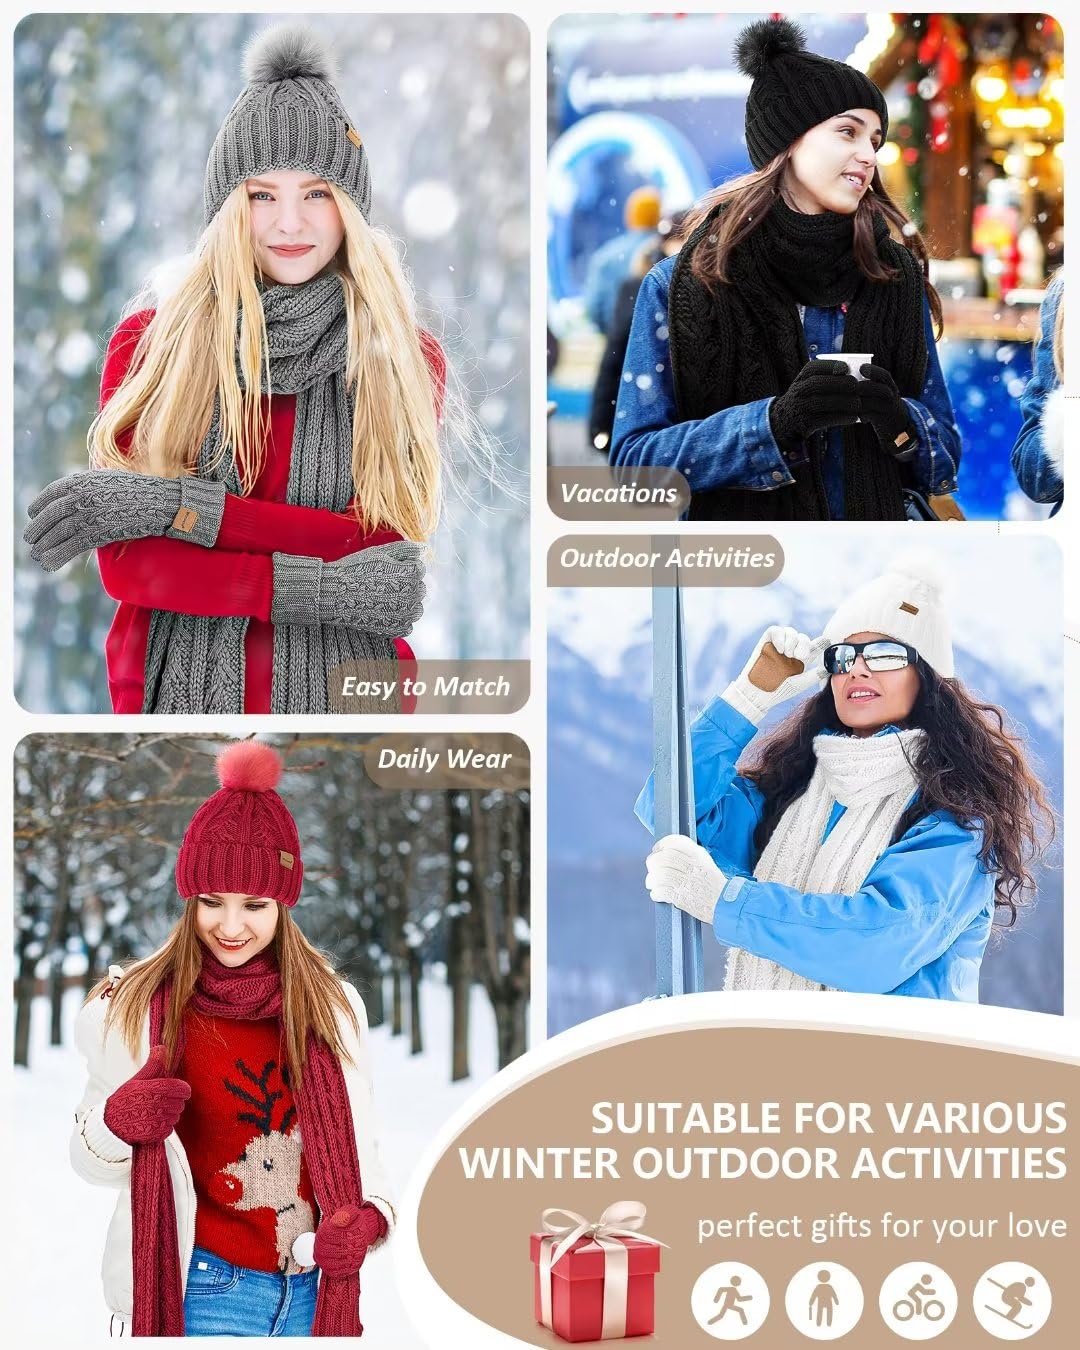 Women's 3-in-1 Fleece Winter Hat, Scarf & Touchscreen Glove Set with Pom Pom - Oatmeal